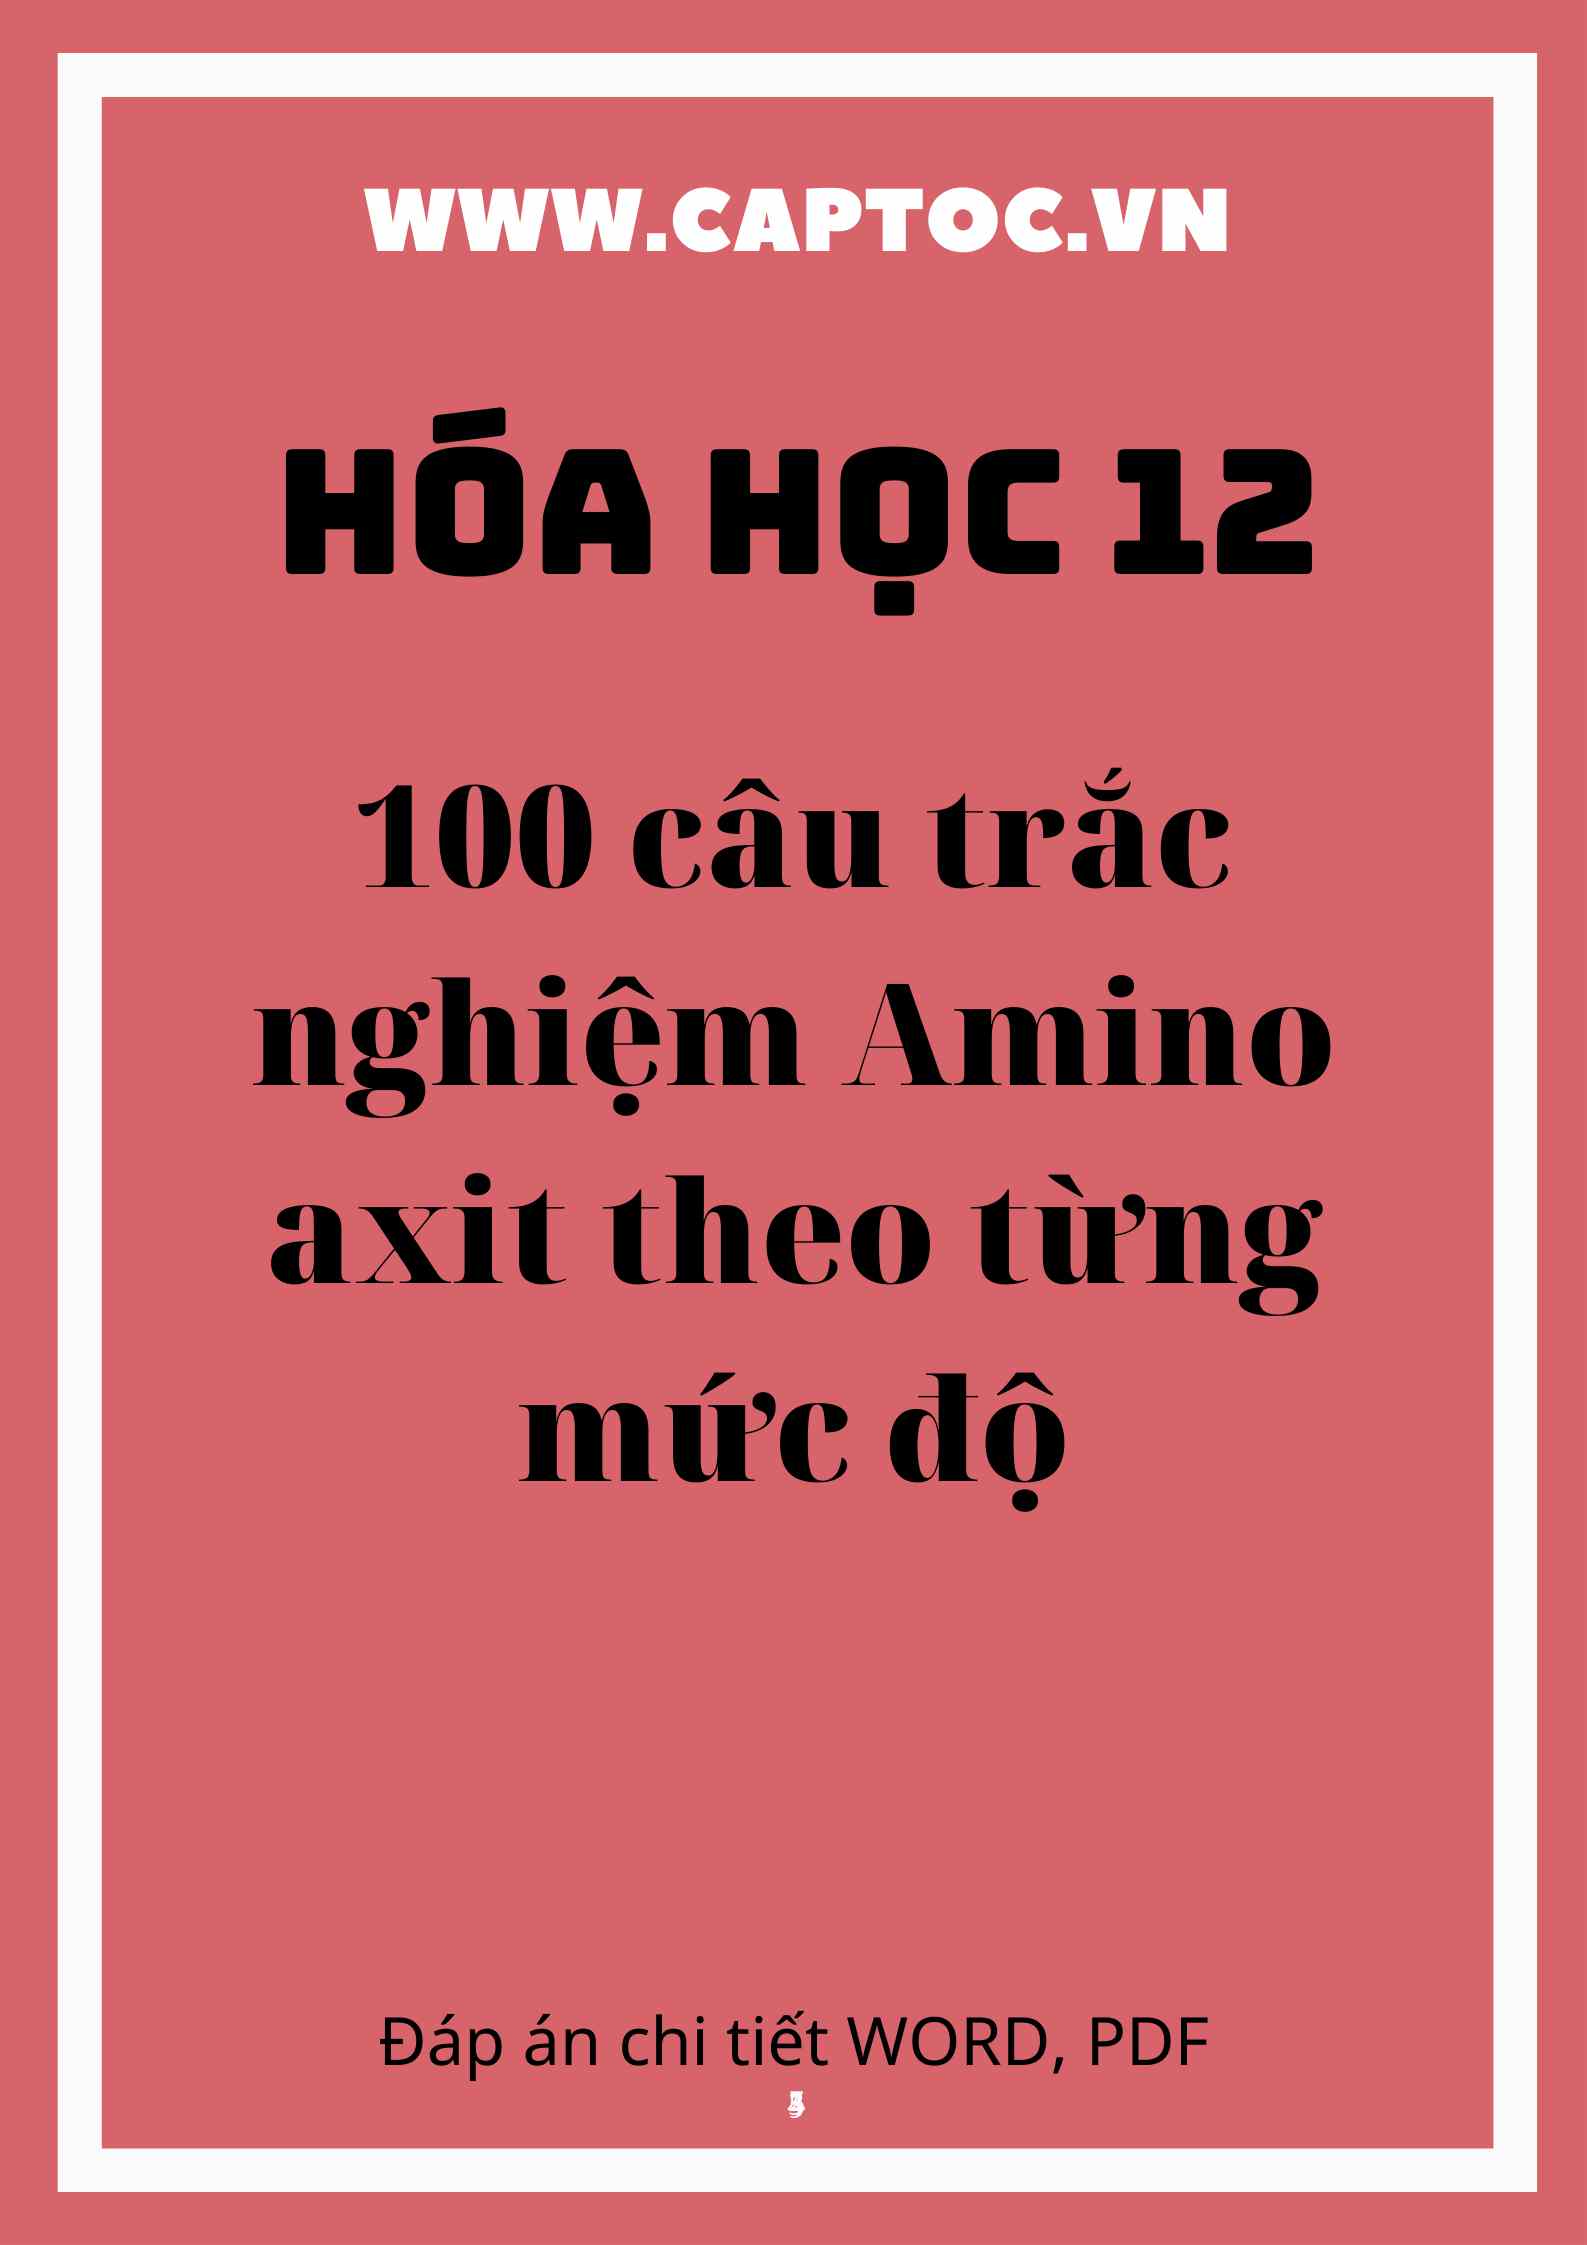 100 câu trắc nghiệm Amino axit theo từng mức độ